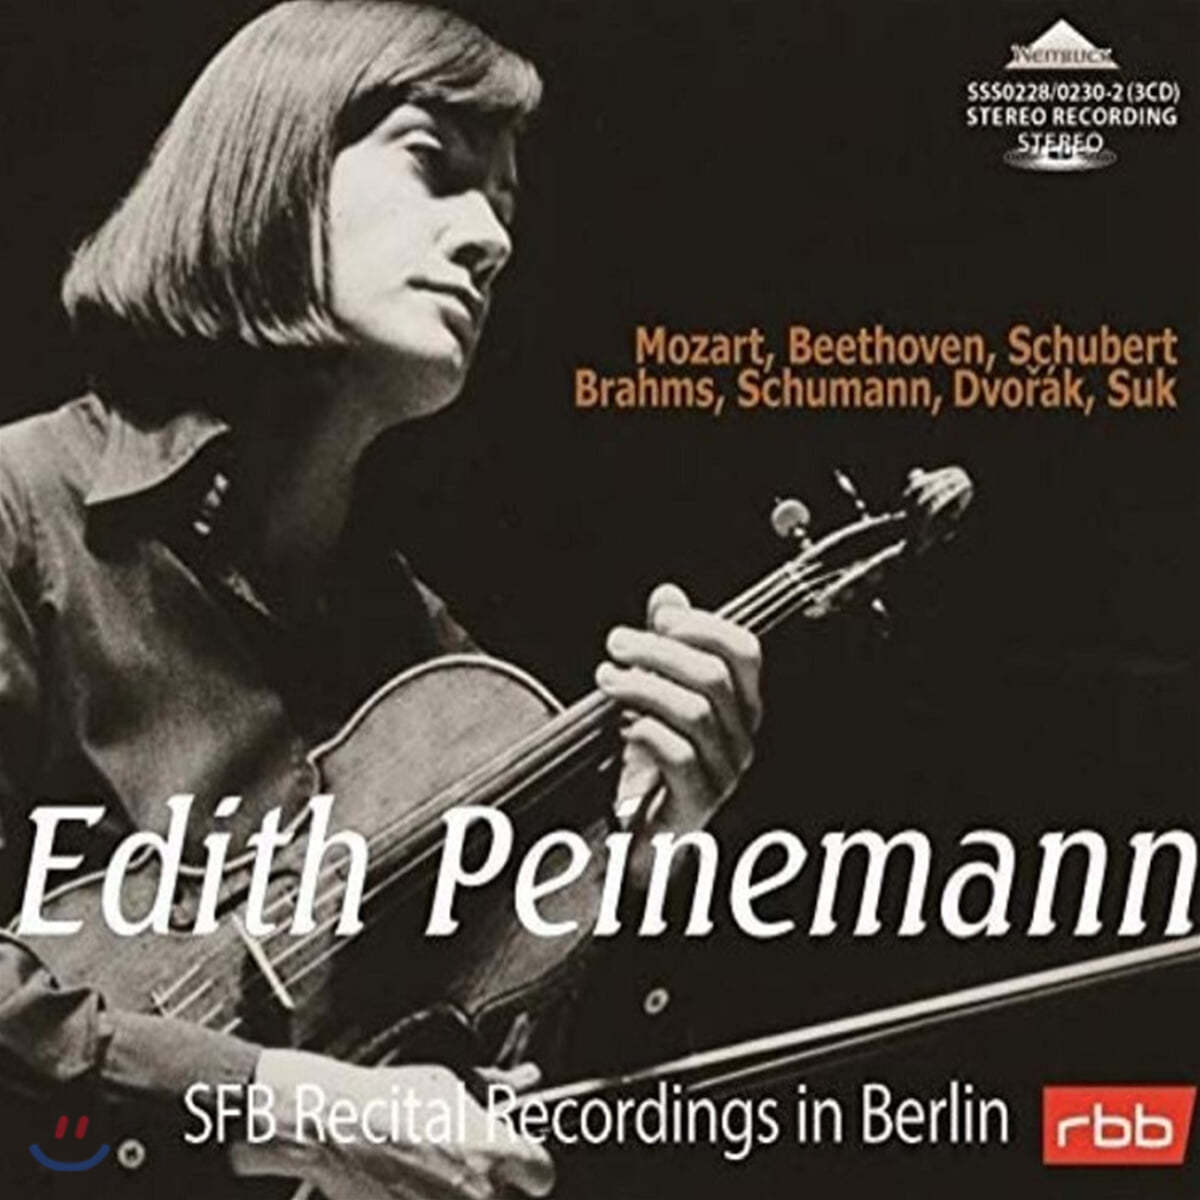 에디트 파이네만 베를린 방송국 미공개 스튜디오 녹음집 (Edith Peinemann SFB Recital Recordings in Berlin)